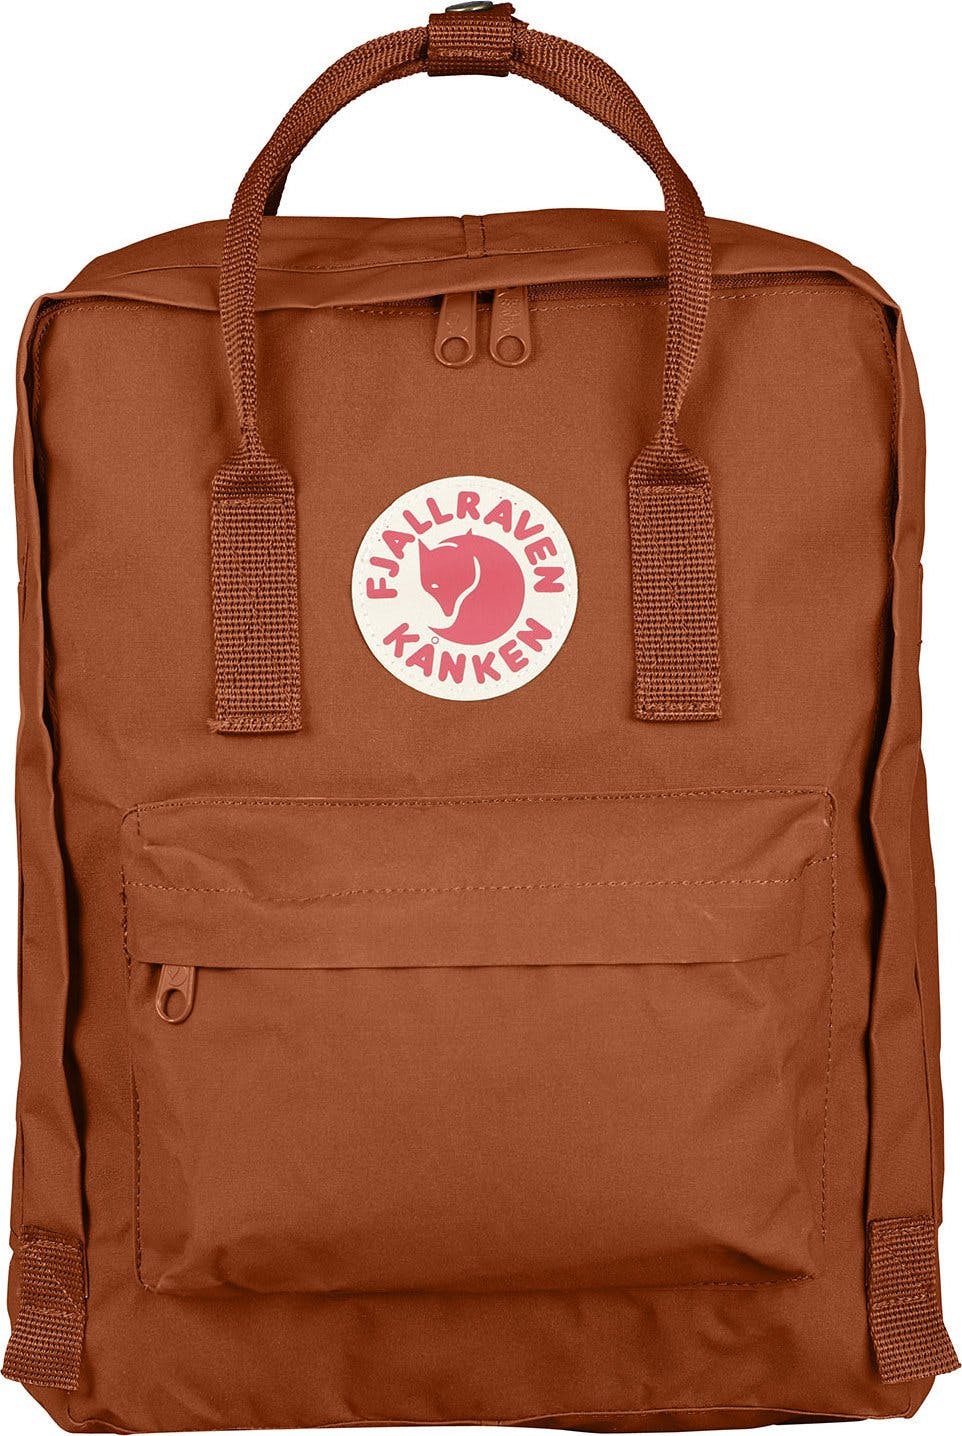 Product image for Kanken Backpack 16L